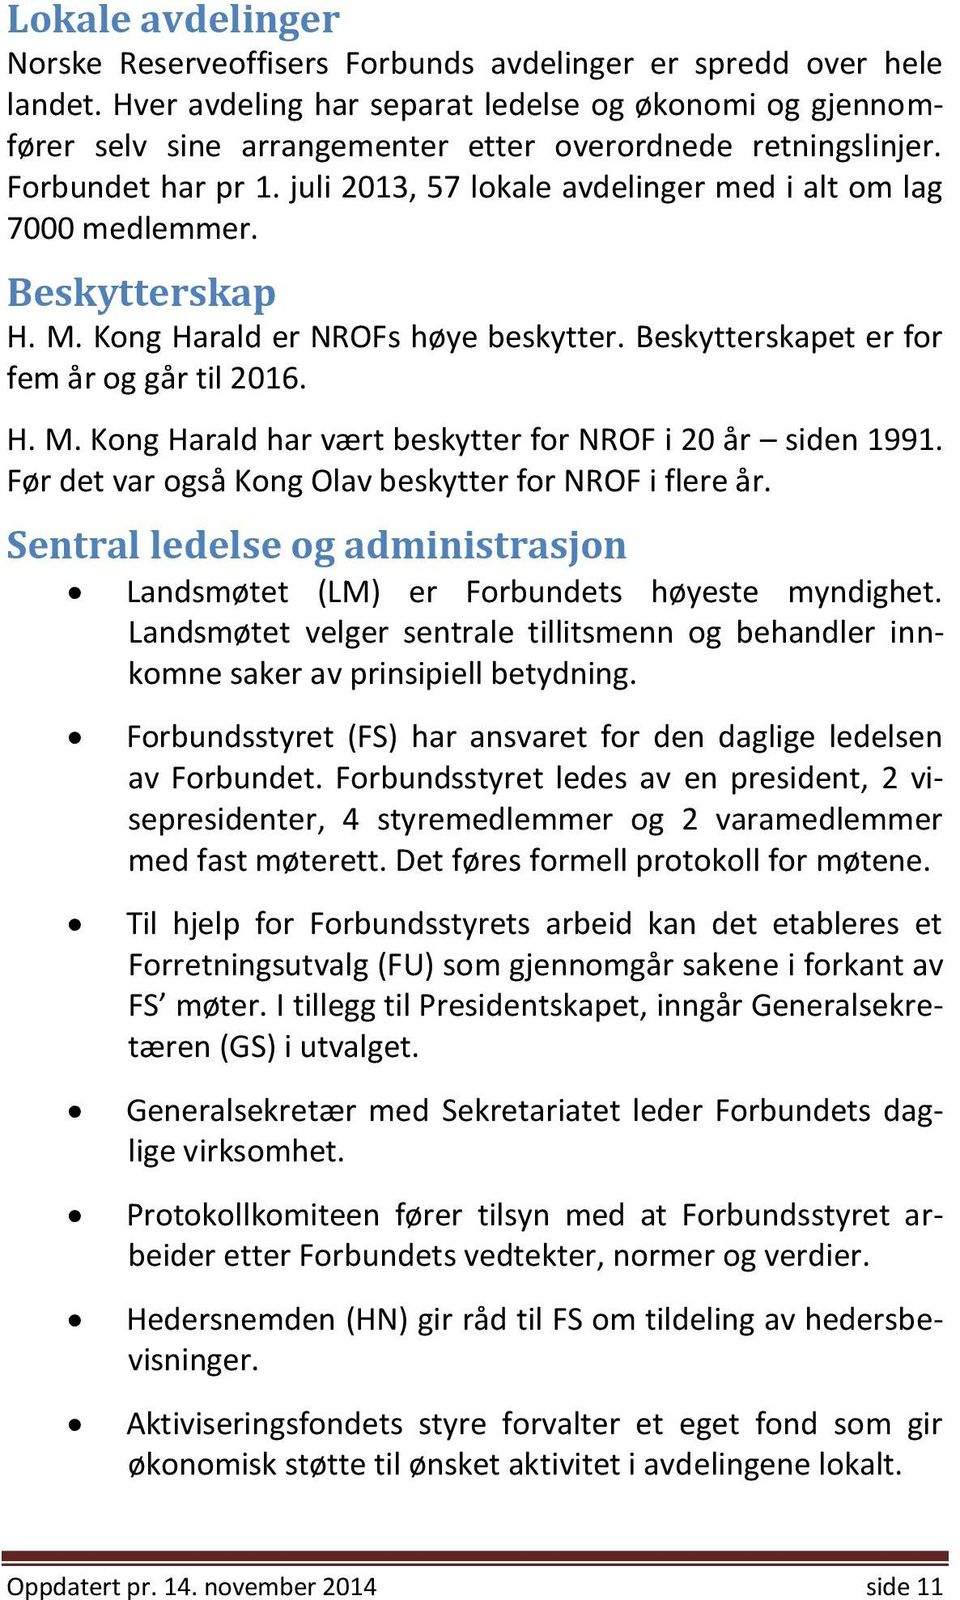 juli 2013, 57 lokale avdelinger med i alt om lag 7000 medlemmer. Beskytterskap H. M. Kong Harald er NROFs høye beskytter. Beskytterskapet er for fem år og går til 2016. H. M. Kong Harald har vært beskytter for NROF i 20 år siden 1991.